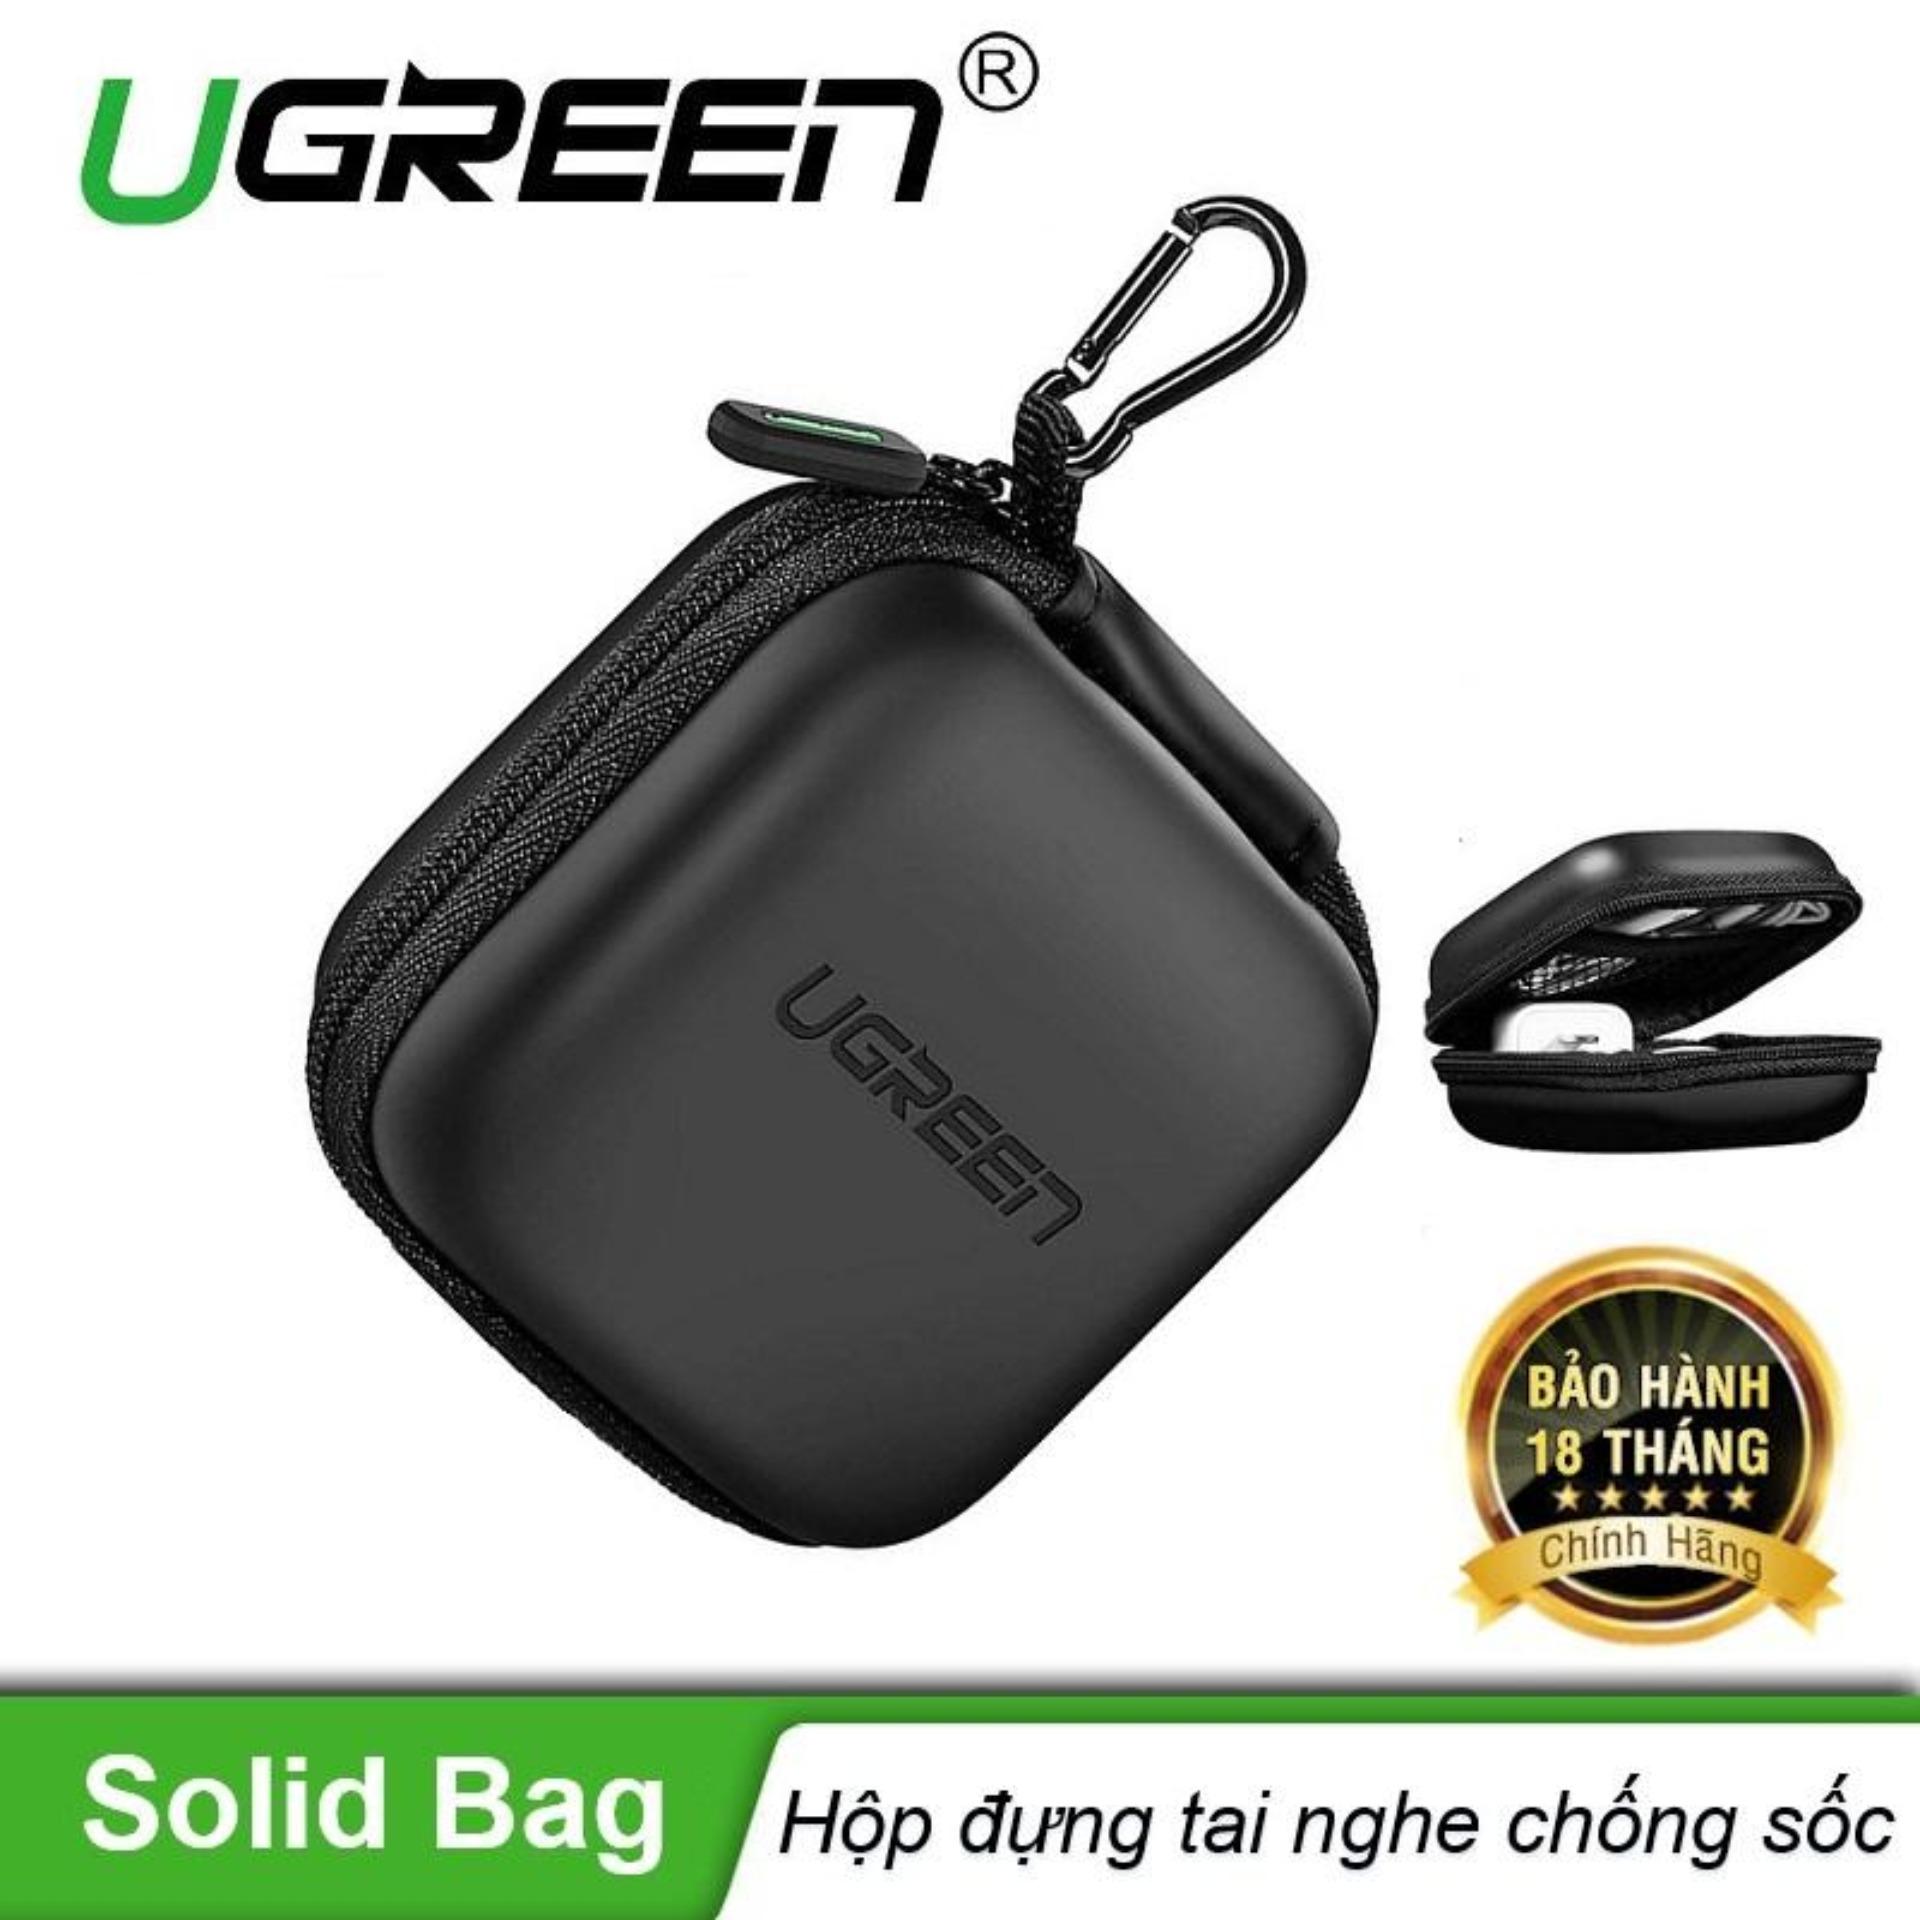 Hộp đựng tai nghe thẻ nhớ cáp USB chống sốc chống nước UGREEN 40816 - Hãng phân phối chính thức